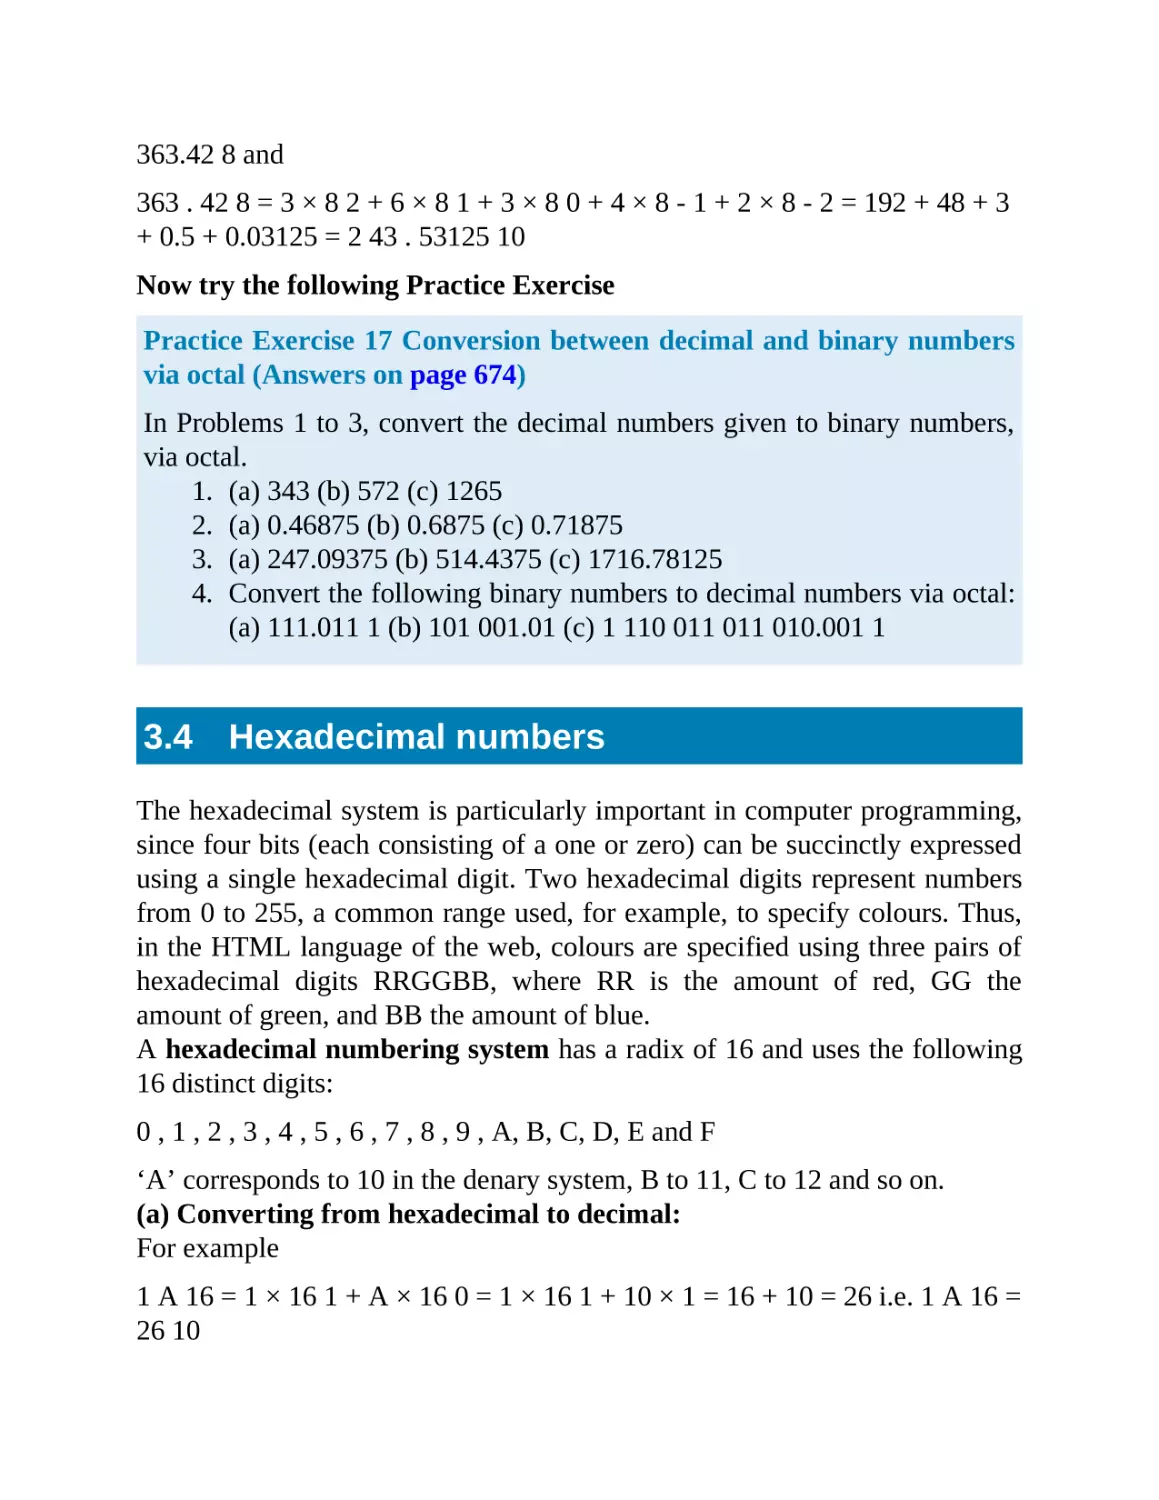 3.4 Hexadecimal numbers